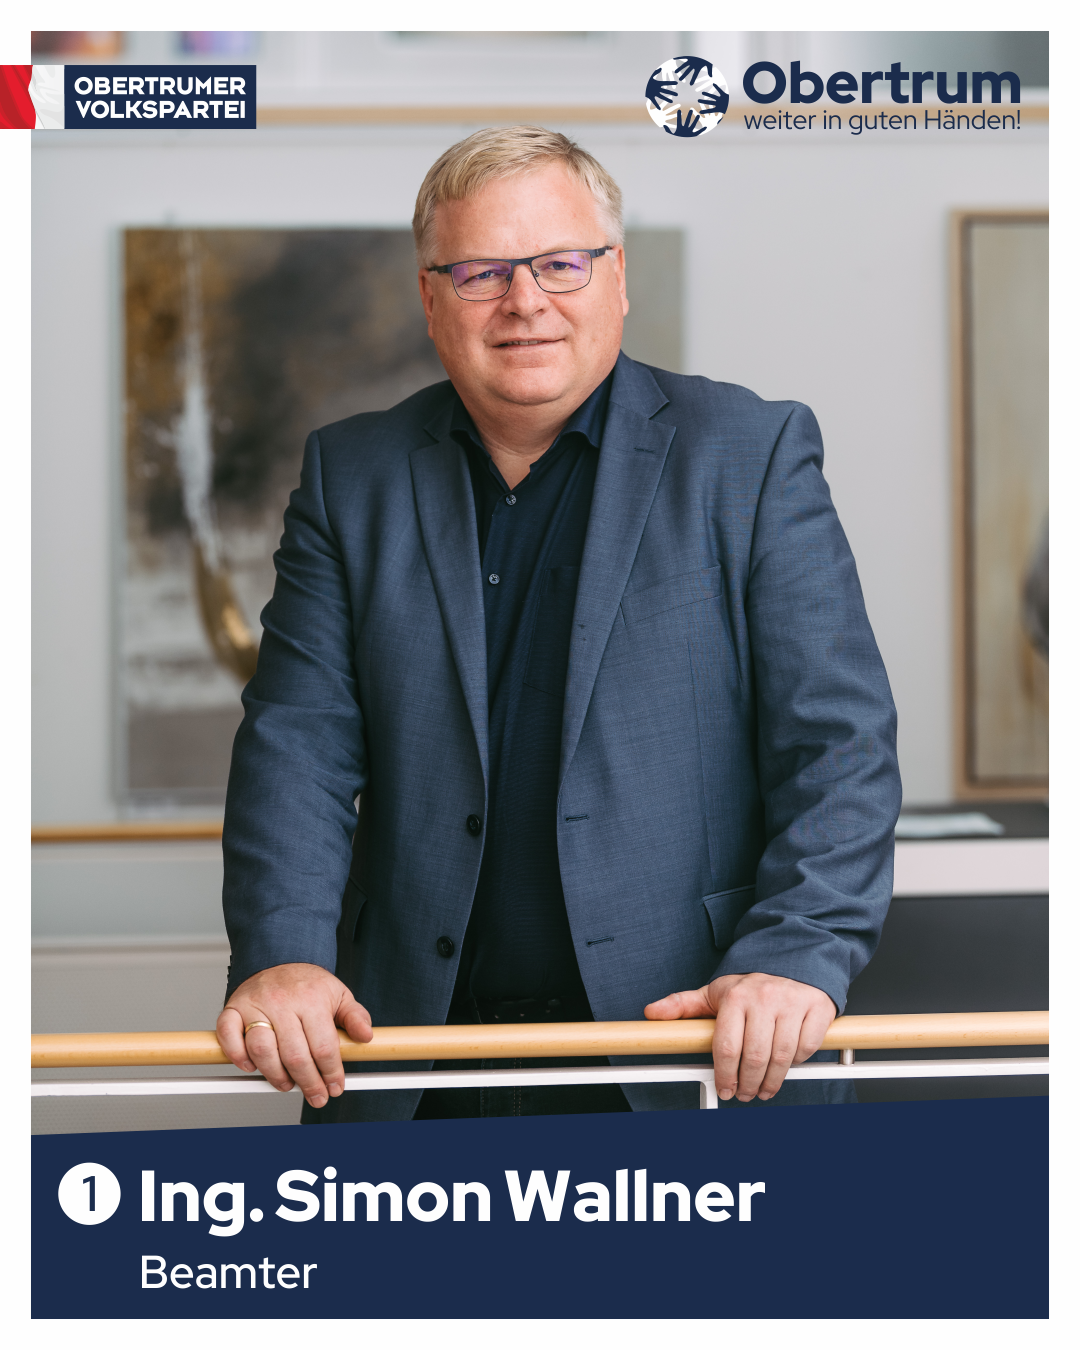 Simon Wallner